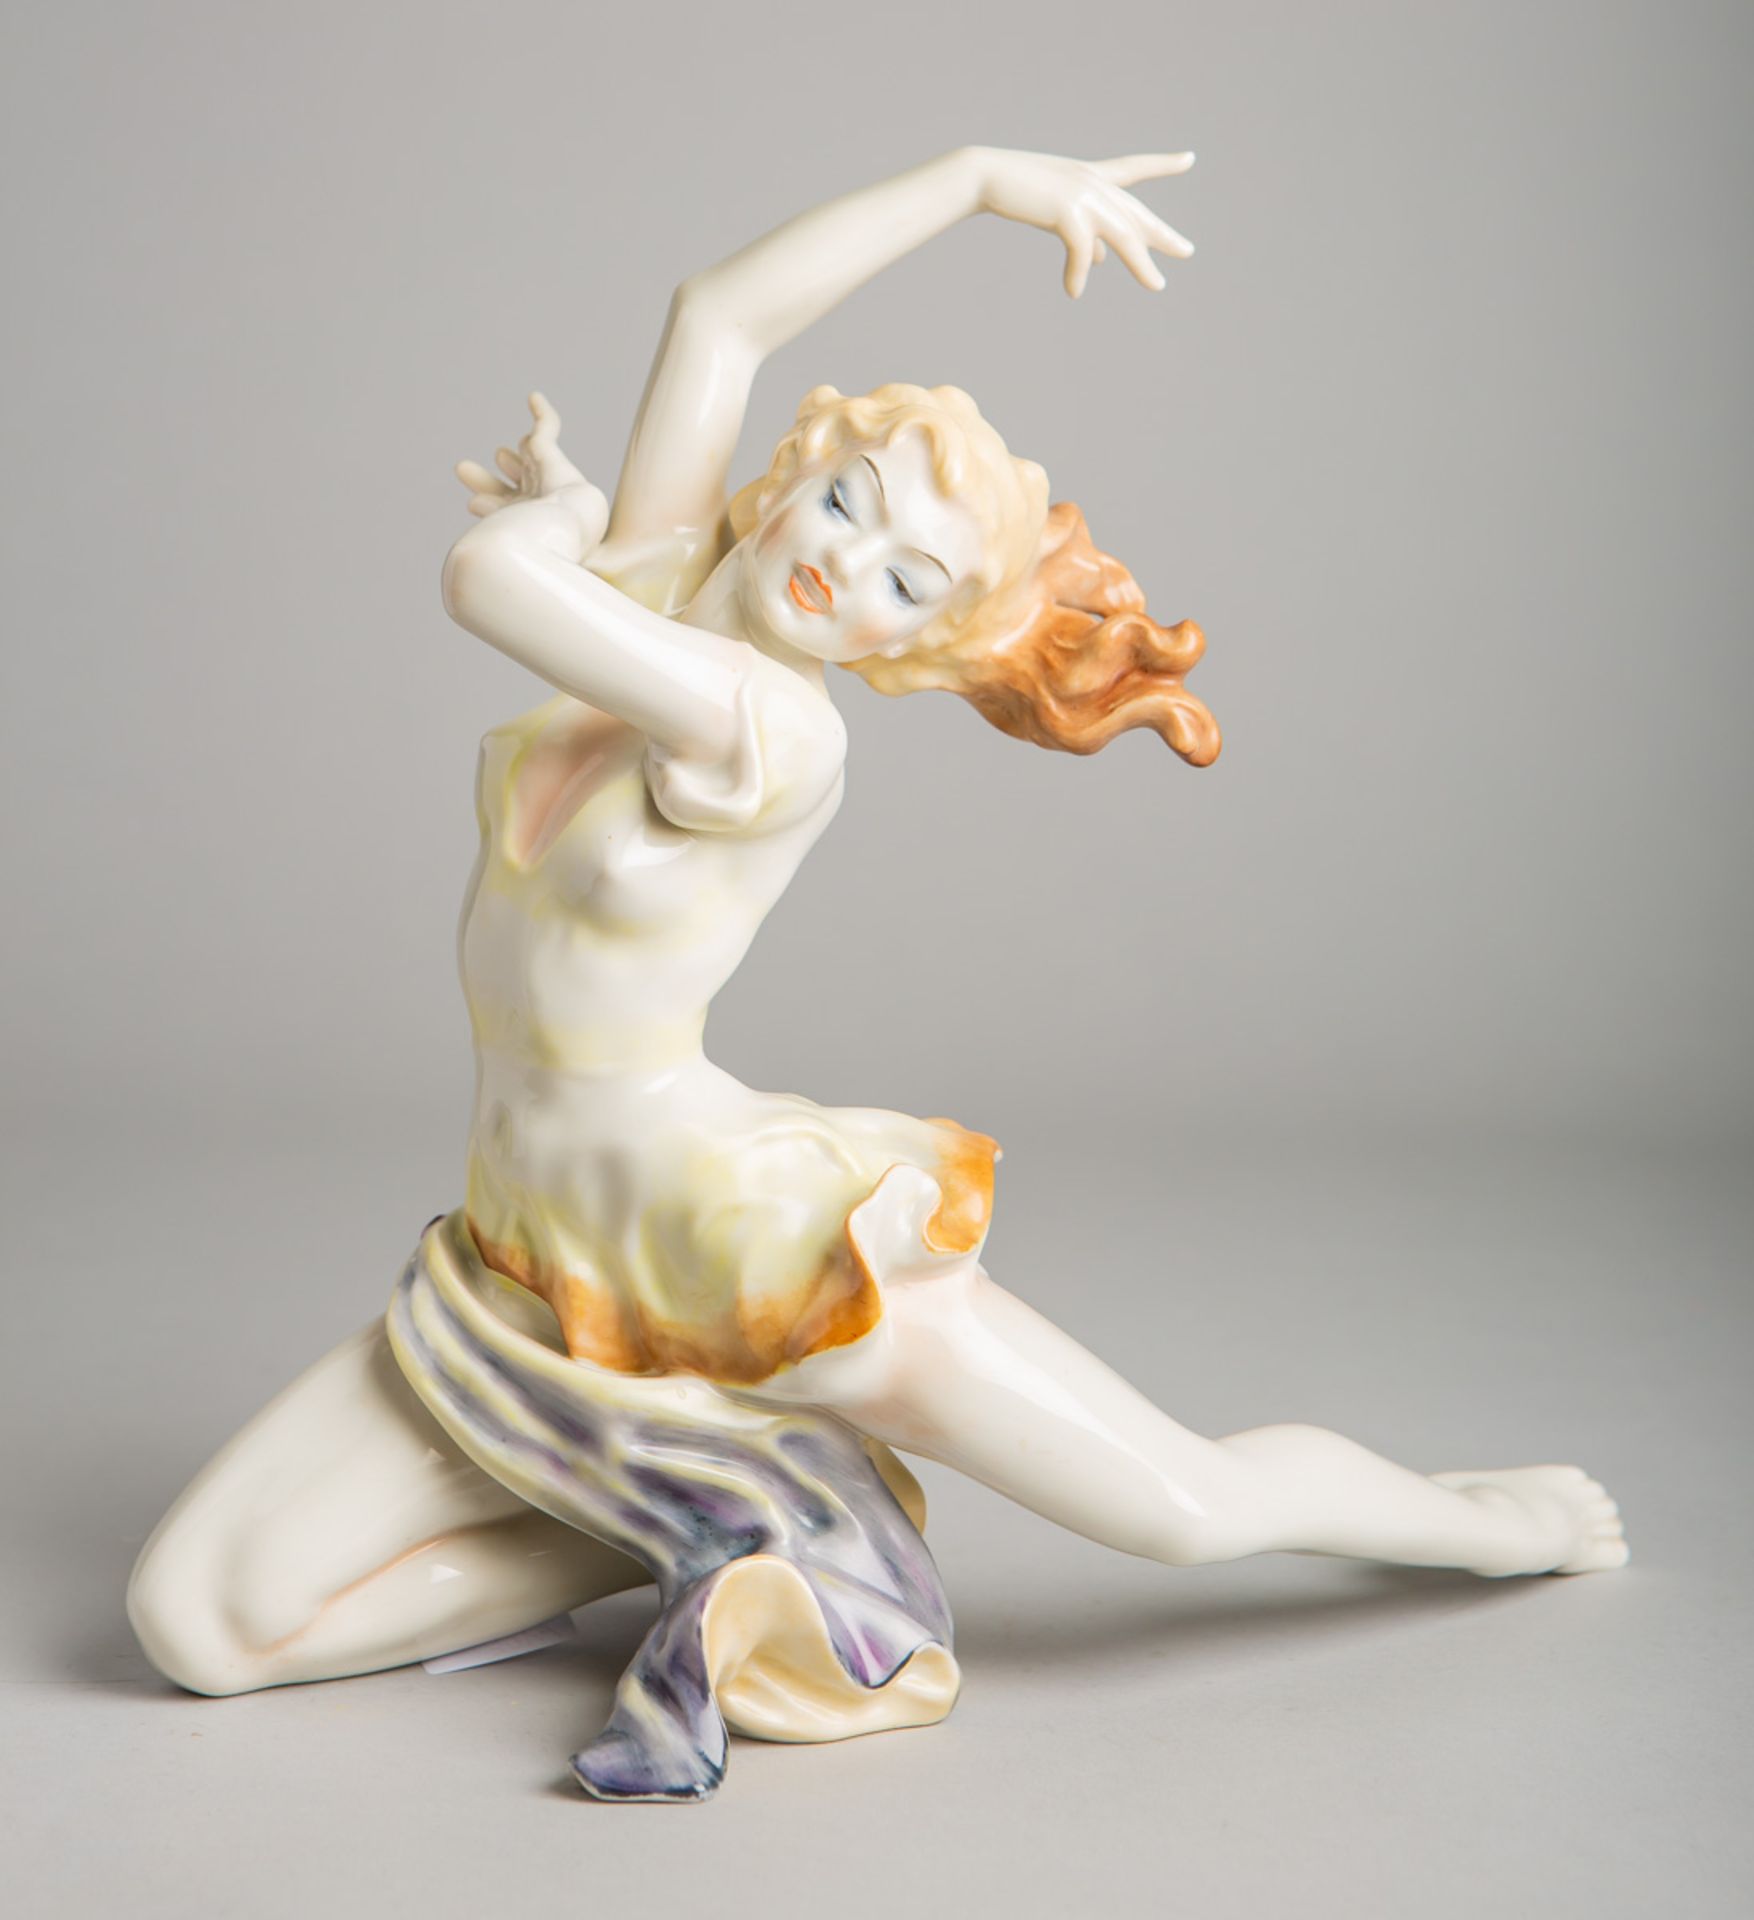 Porzellanfigur "Tänzerin" (Hutschenreuther, Deutschland, 1930er Jahre)